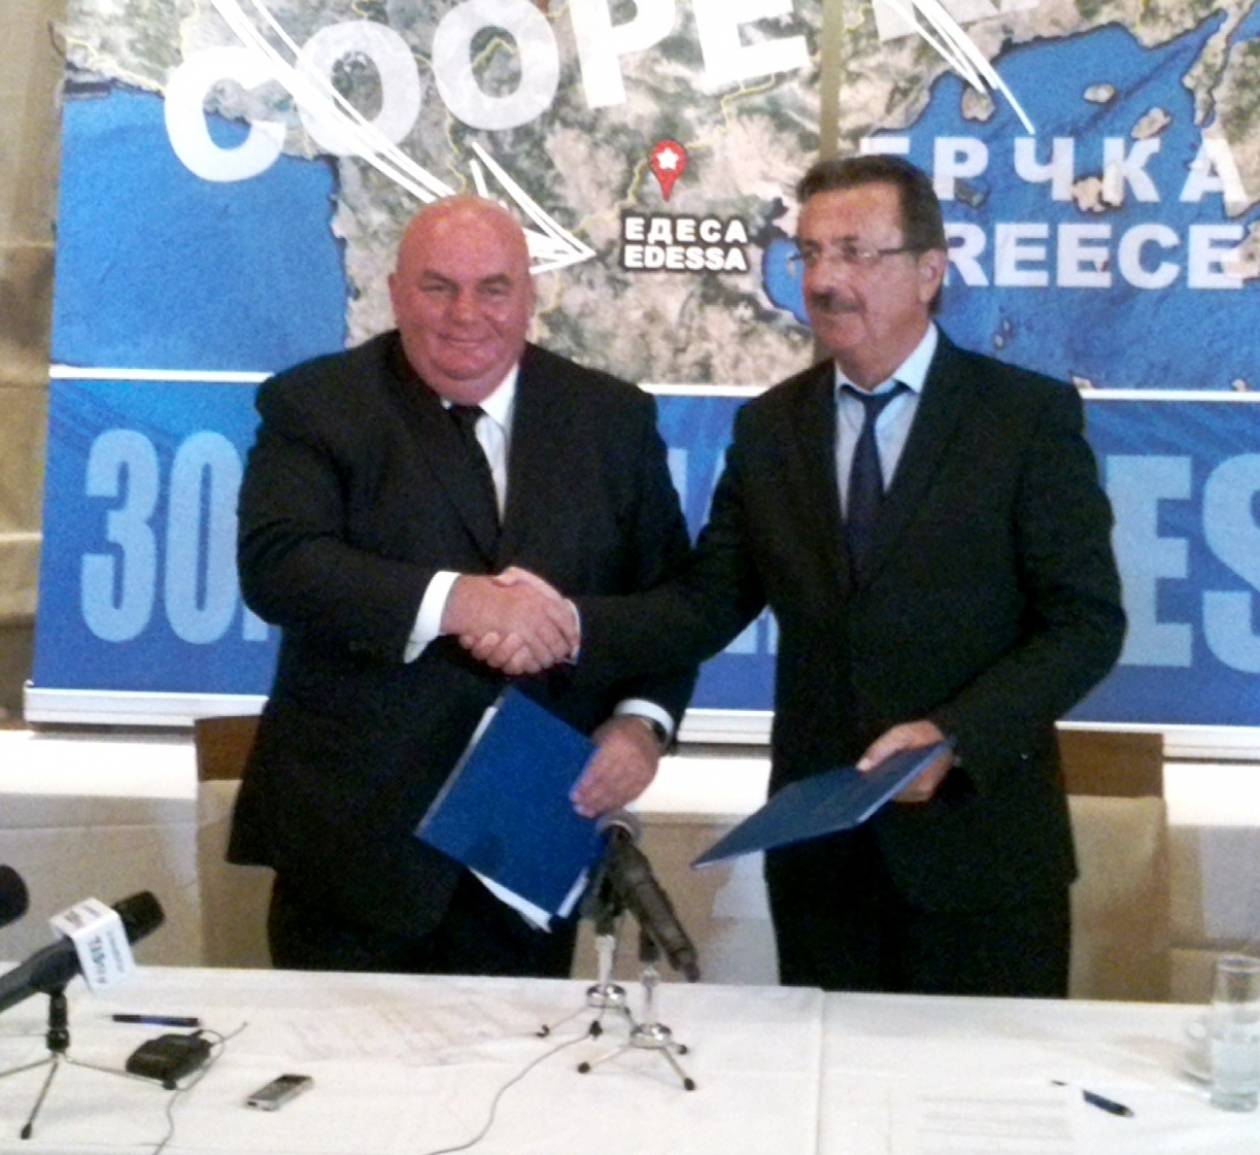 Υπεγράφη πρωτόκολλο συνεργασίας ανάμεσα σε Π.Ε. Πέλλας και Γιαγκόντινα